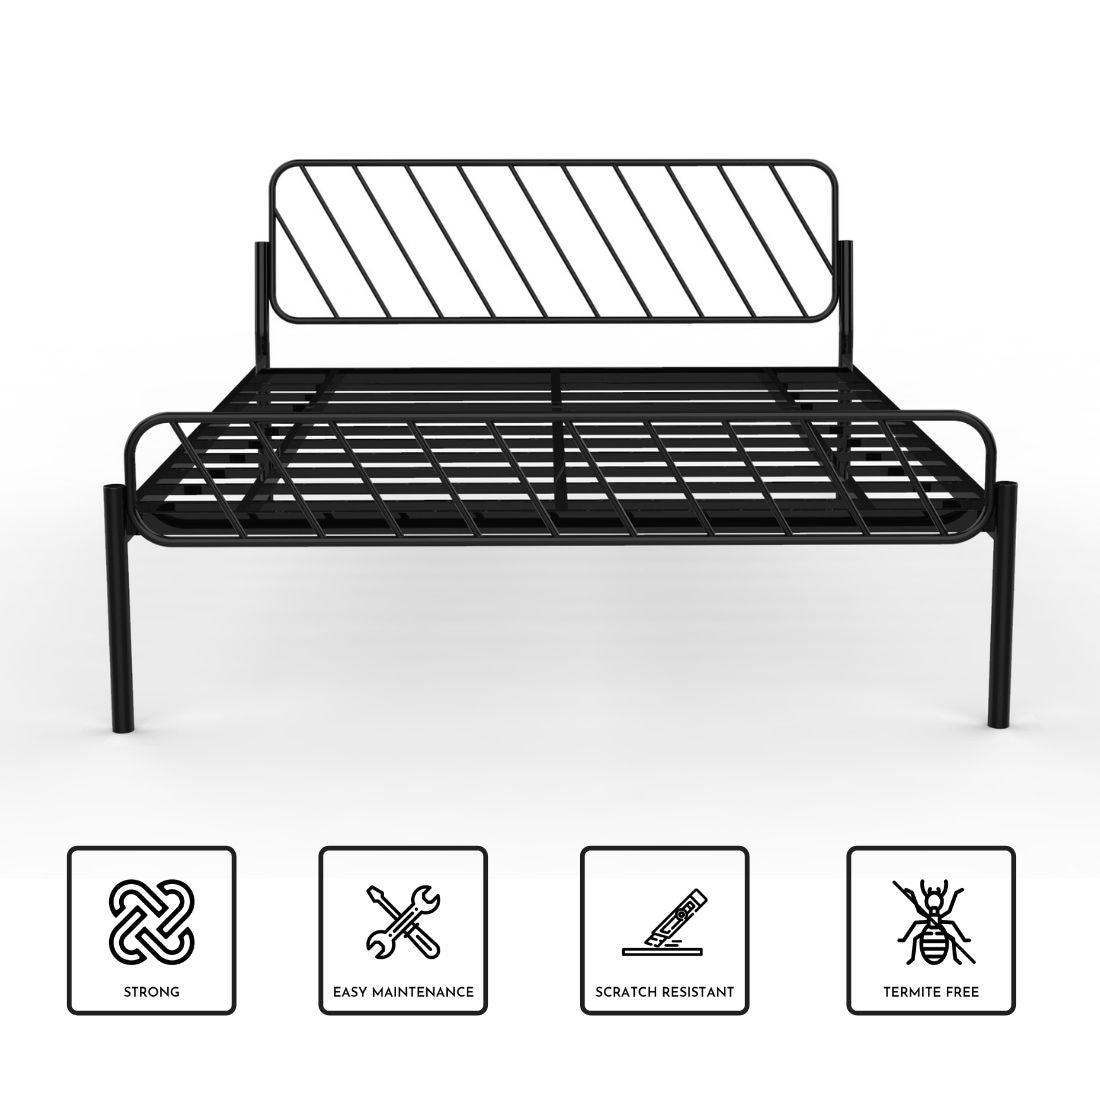 Oblique Bed - metallikafurniture.com